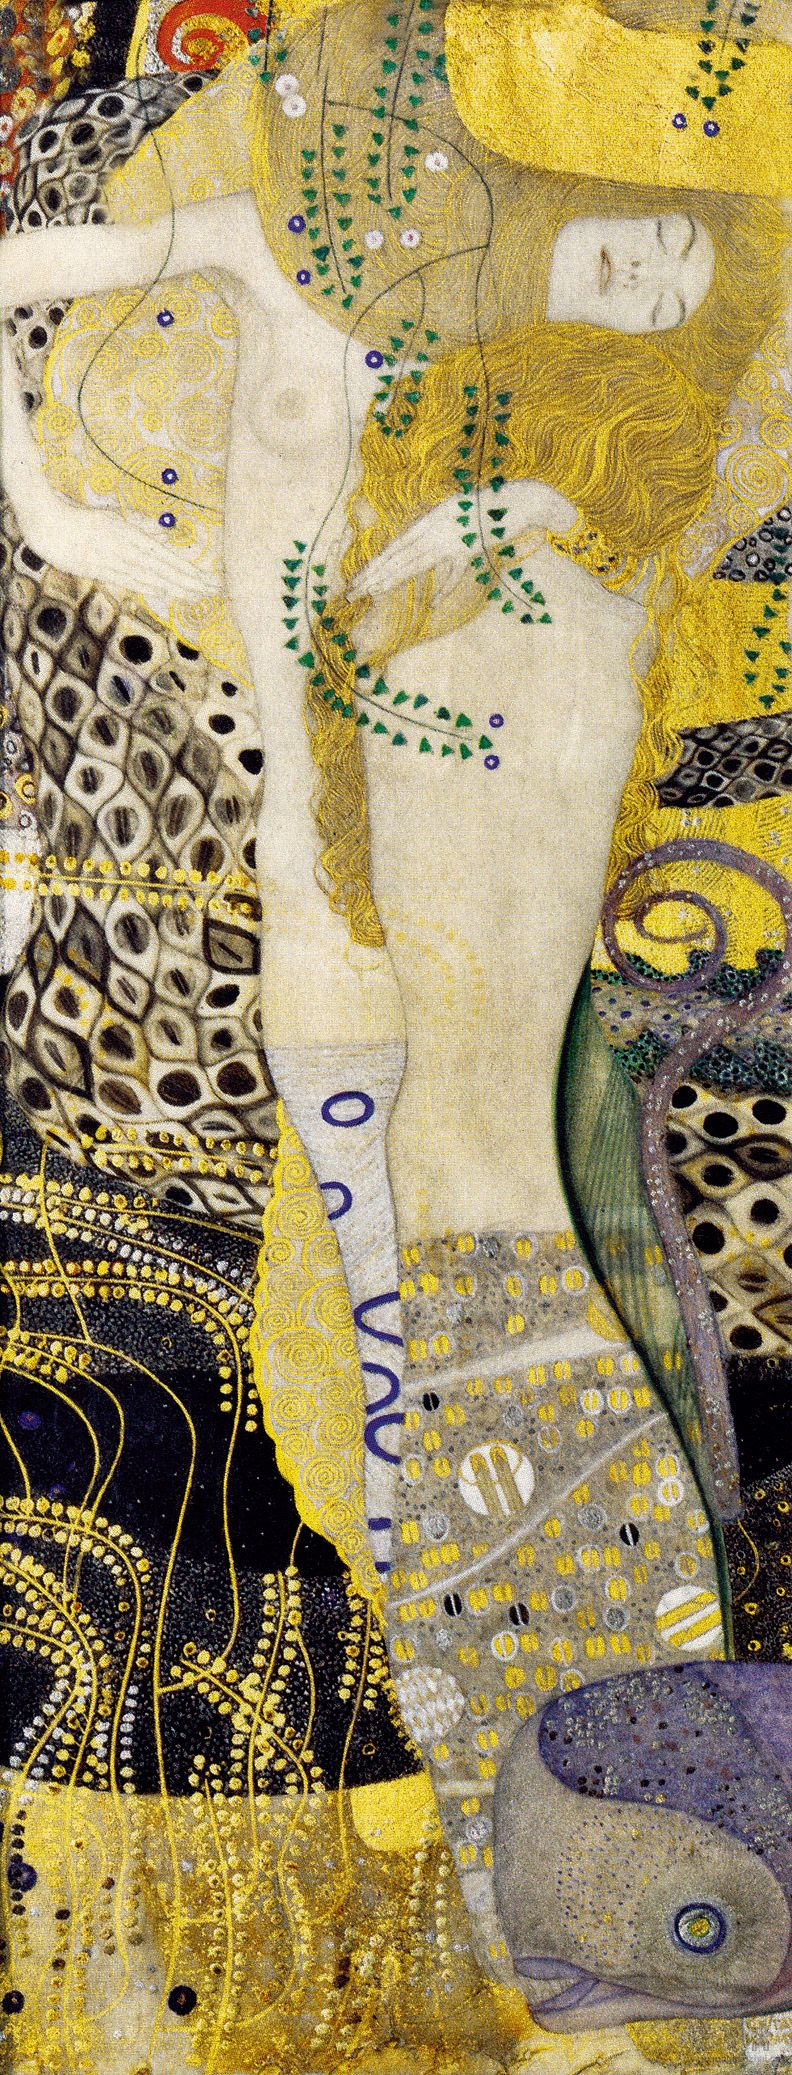 奥地利 克里姆特 水蛇 综合材料 1904-1907 维也纳奥地利美术馆藏20cm×50cm